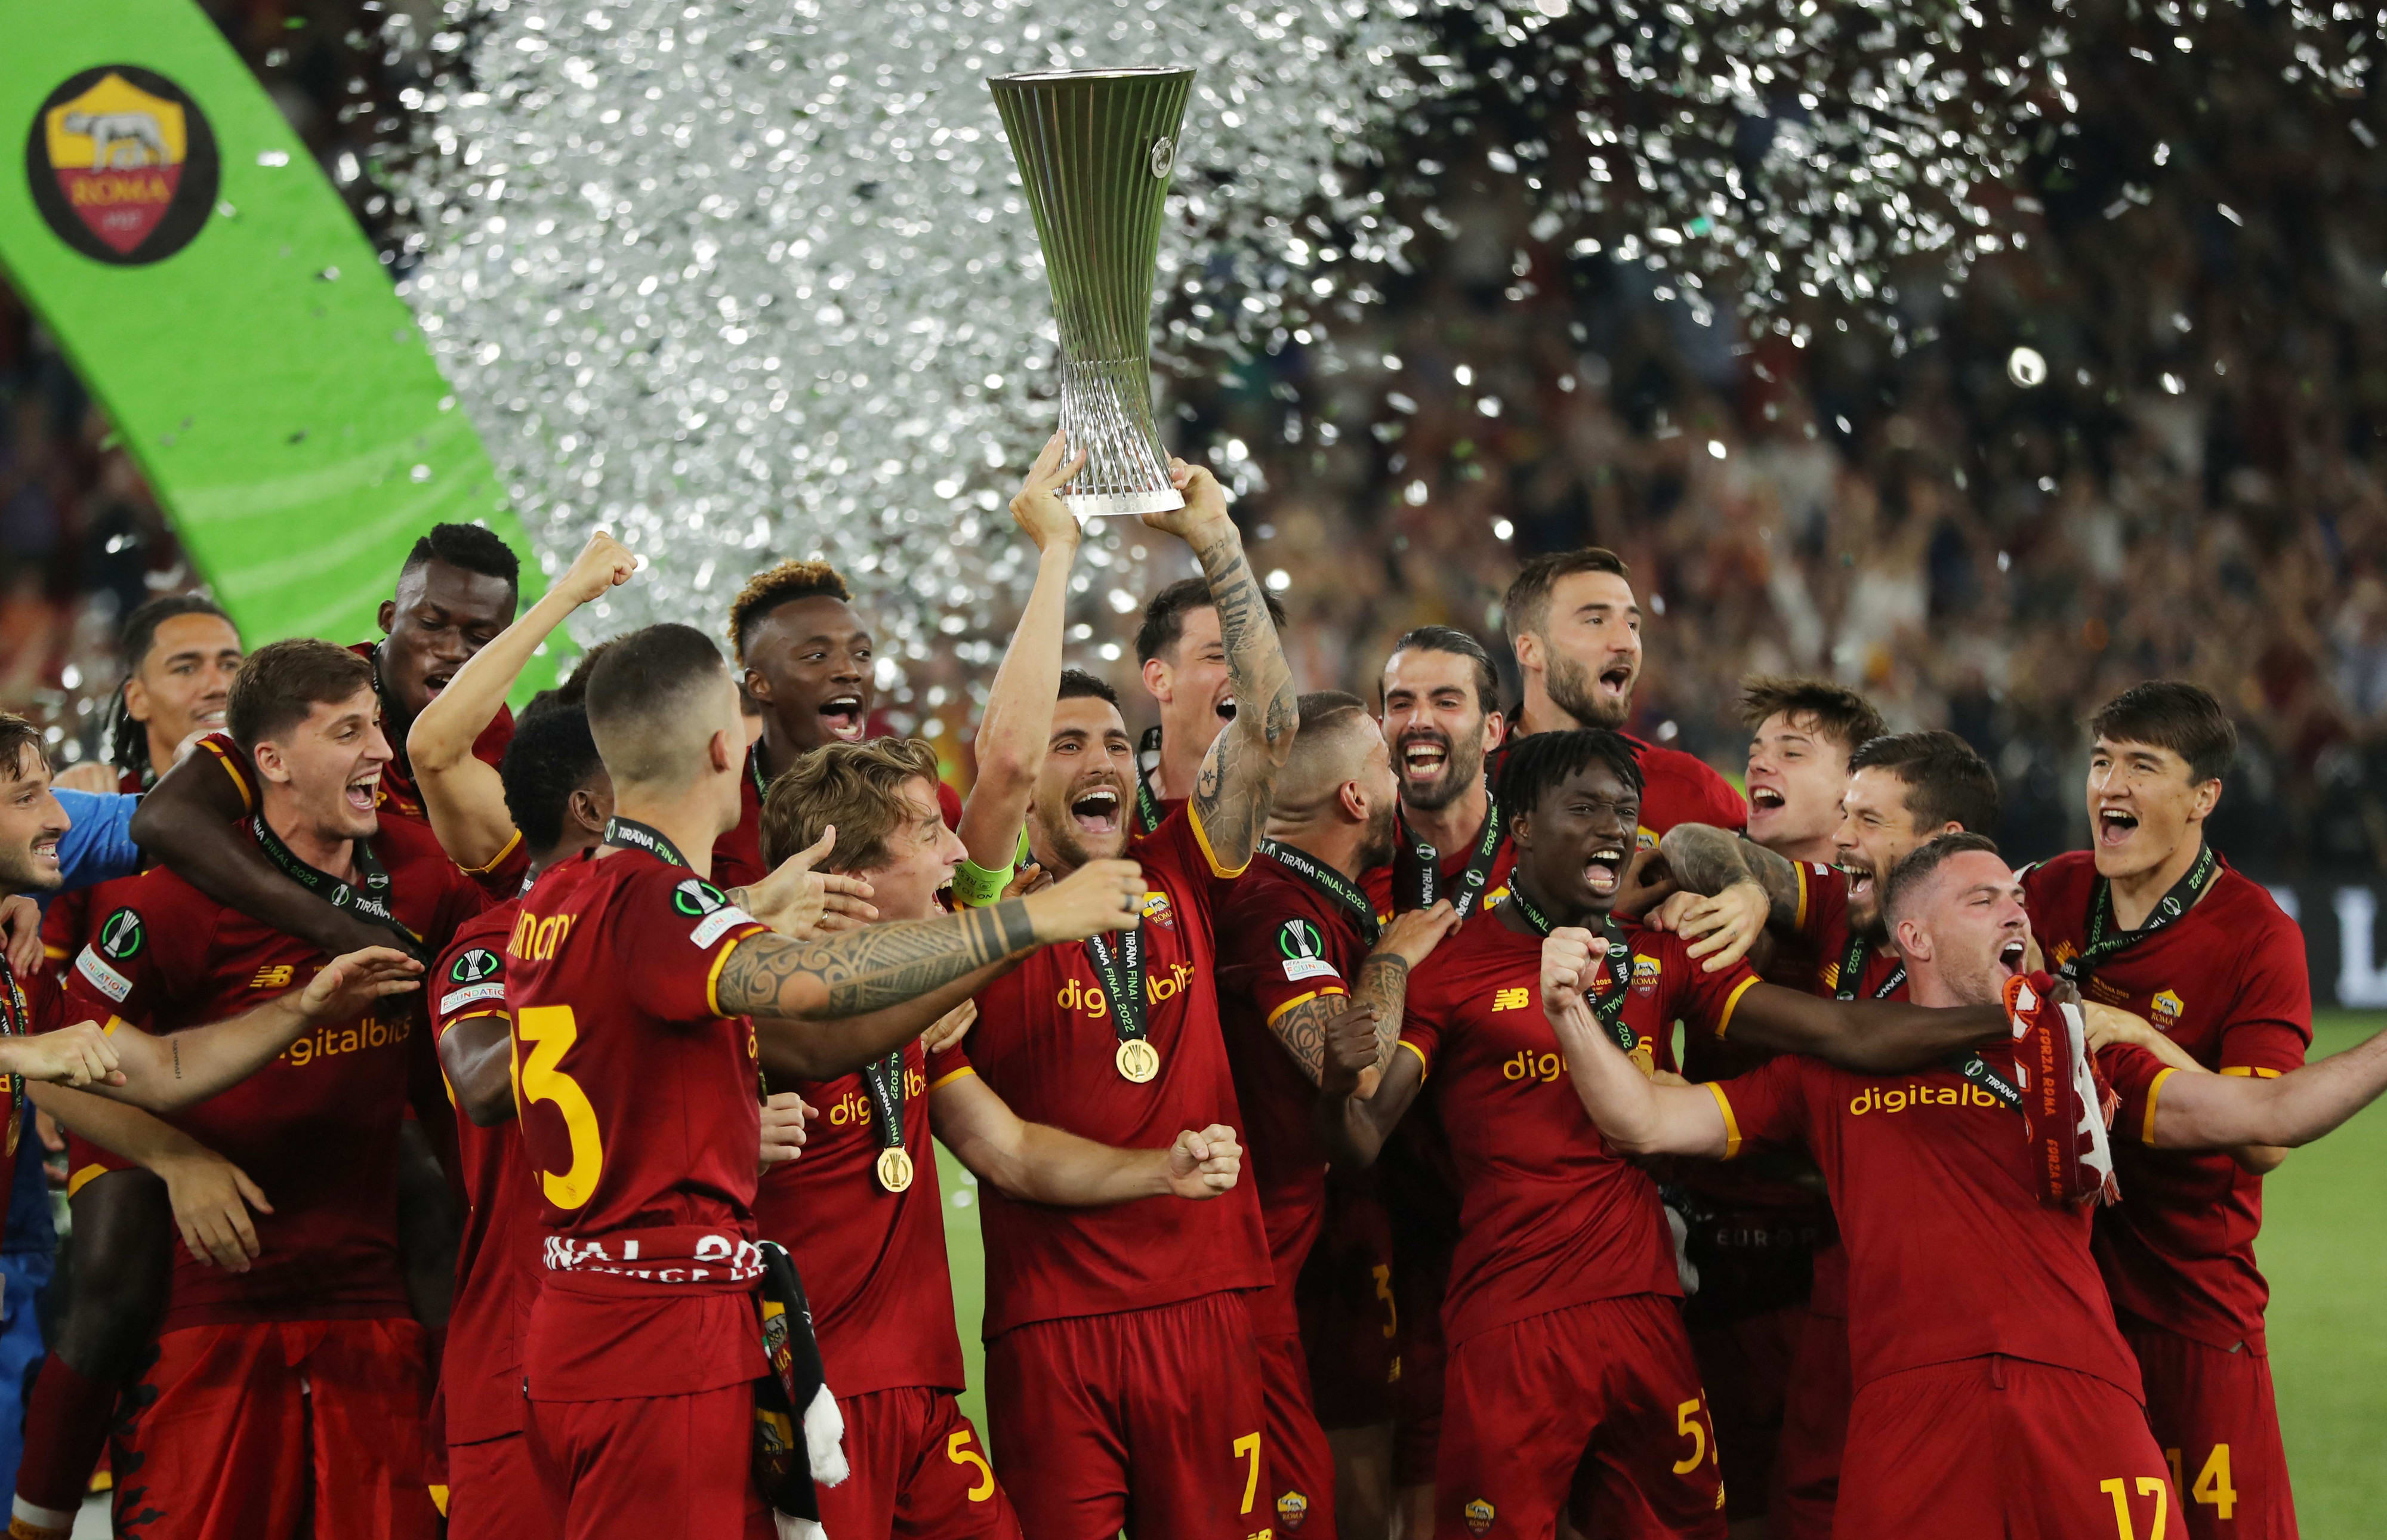 לורנצו פלגריני קפטן רומא מניף את גביע הקונפרנס ליג